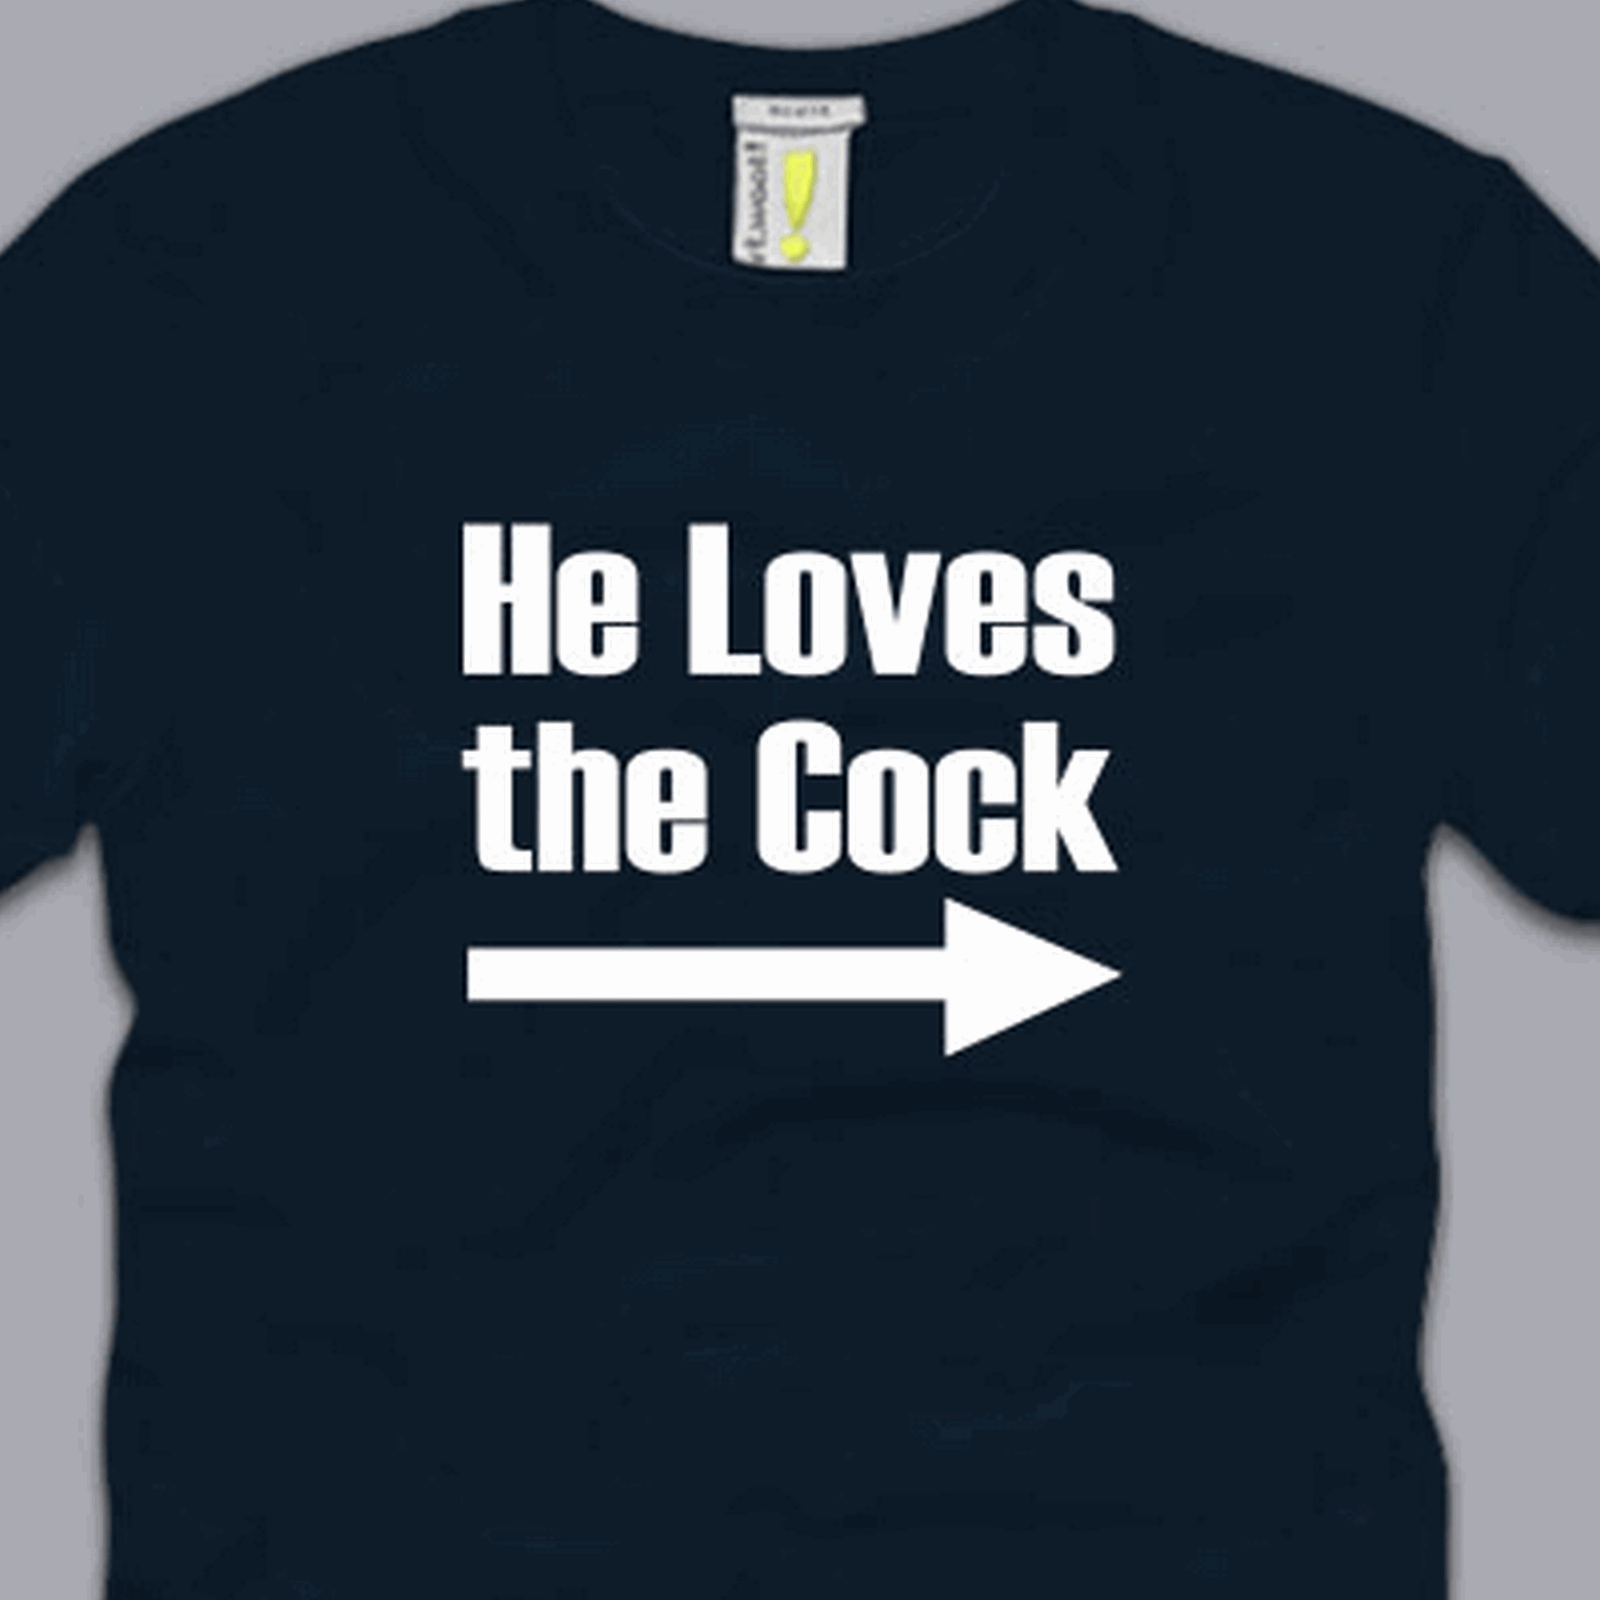 He Loves The Cock T Shirt S M L Xl 2xl 3xl Funny Sex Humor Gag Cool Awesome Tee 5947